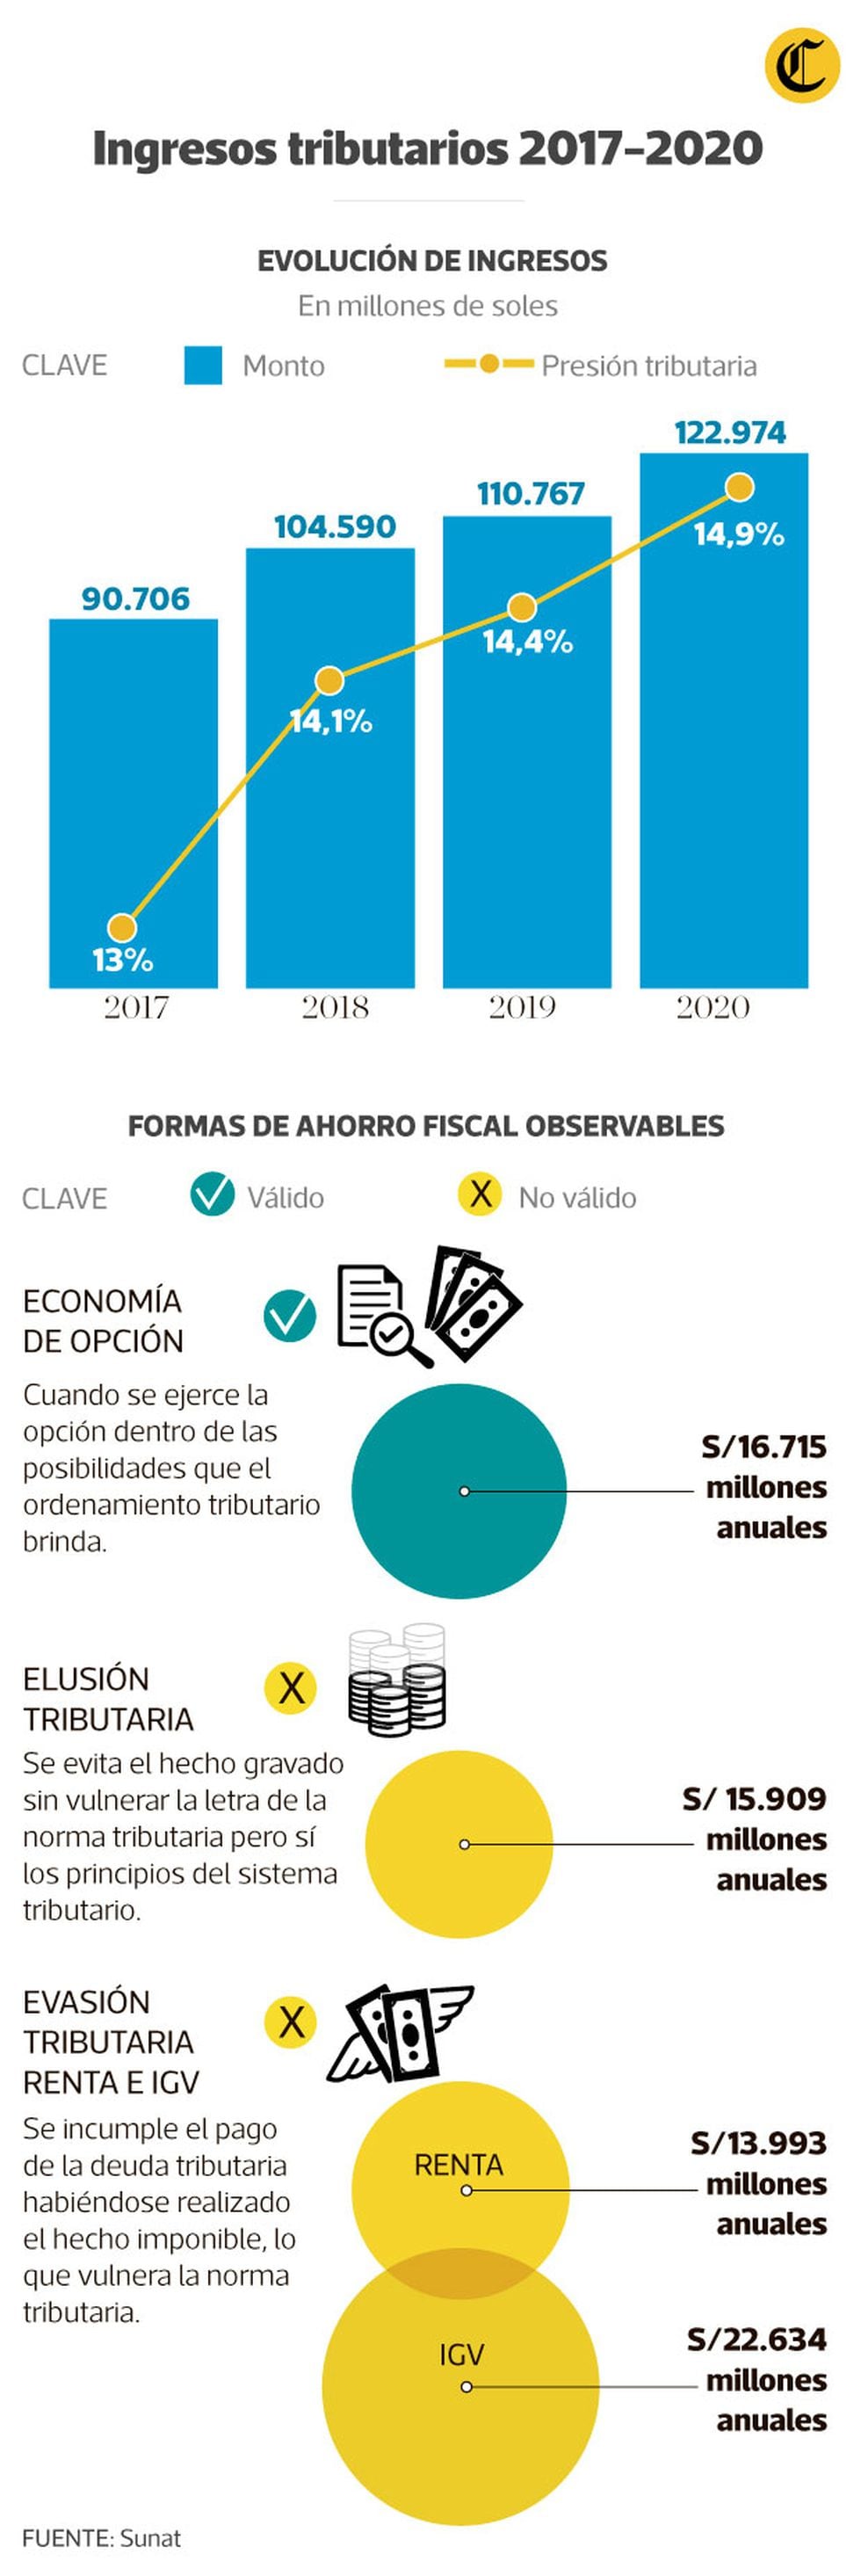 Eliminar la elusión tributaria representaría un crecimiento de 9% en la recaudación neta peruana, según el gobierno. (Infografía: Antonio Tarazona/El Comercio)